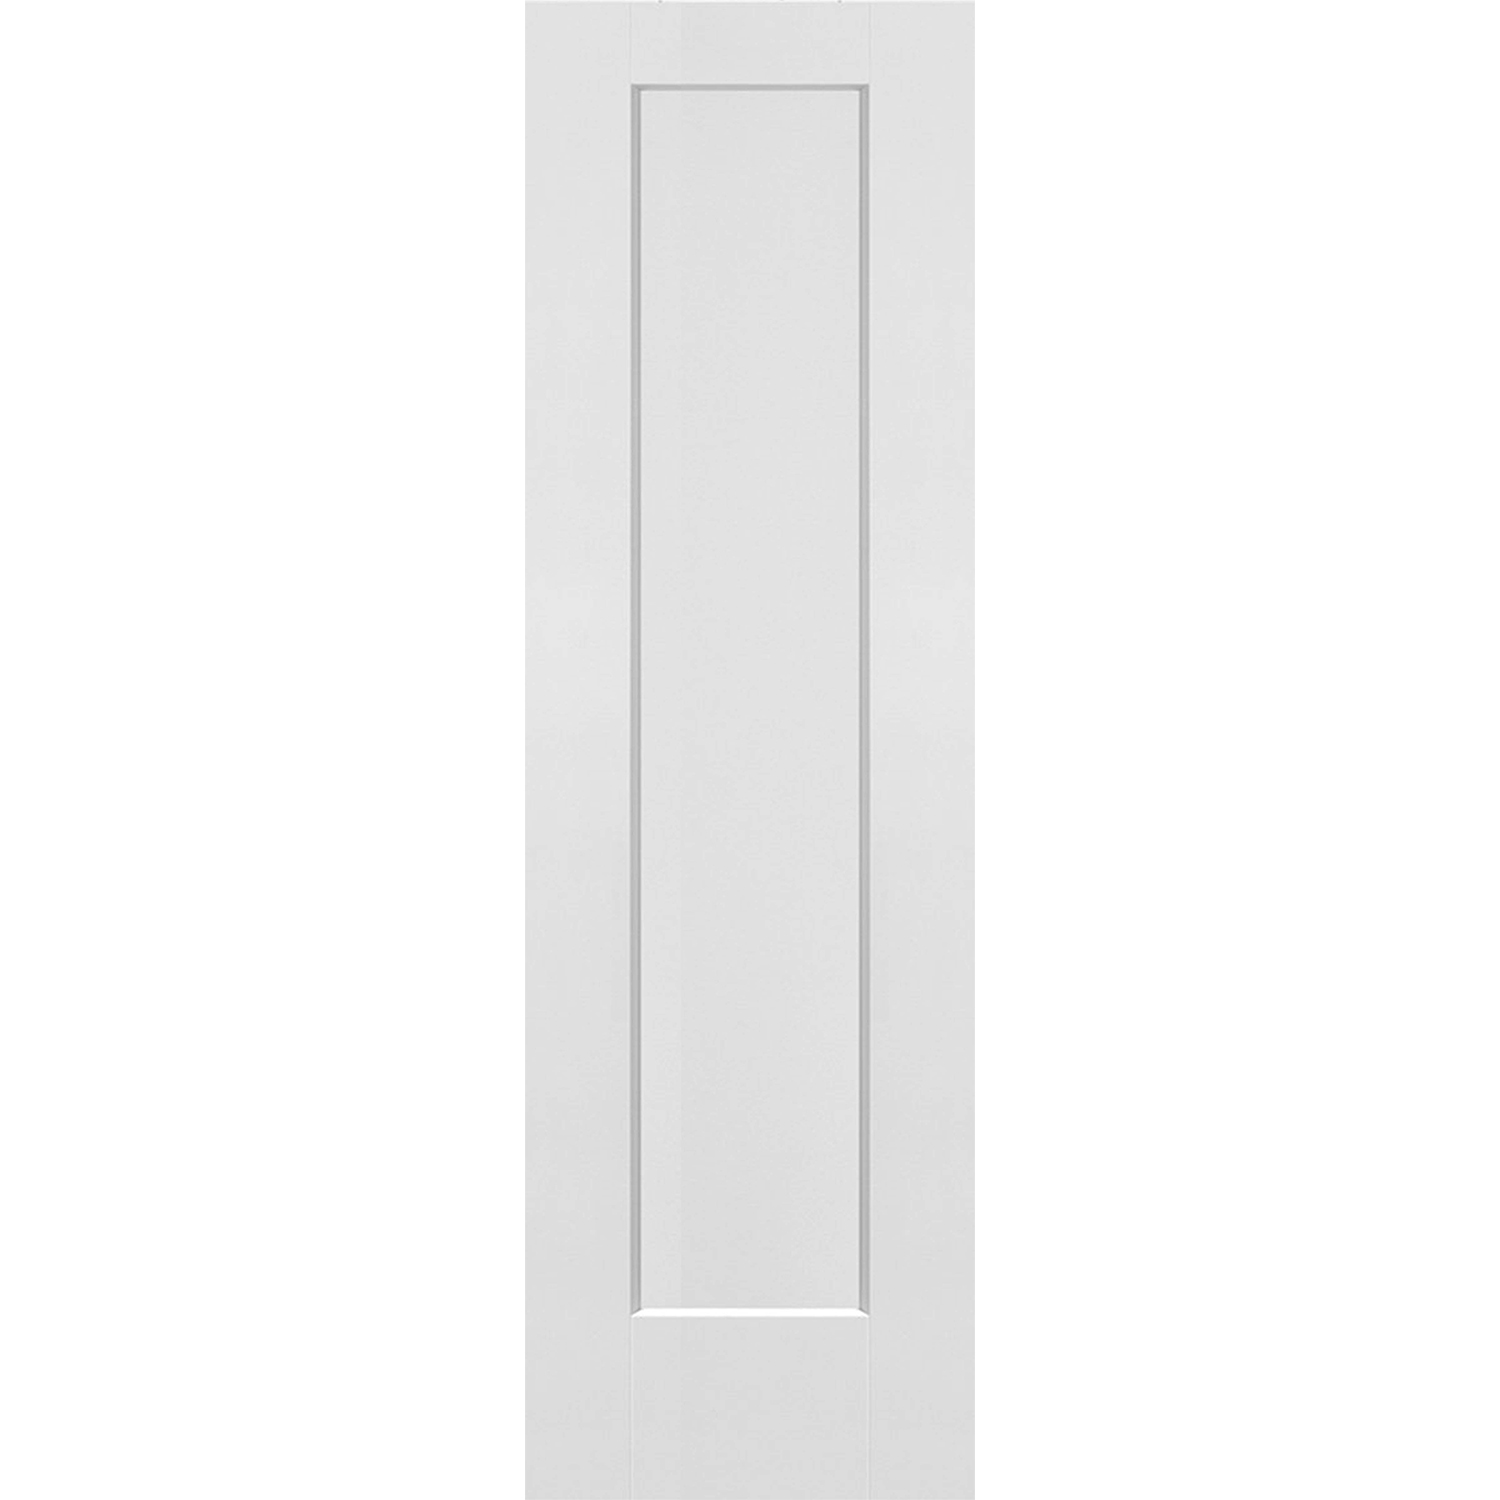  1 Panel Shaker Door (Solid Core) - 24 x 80